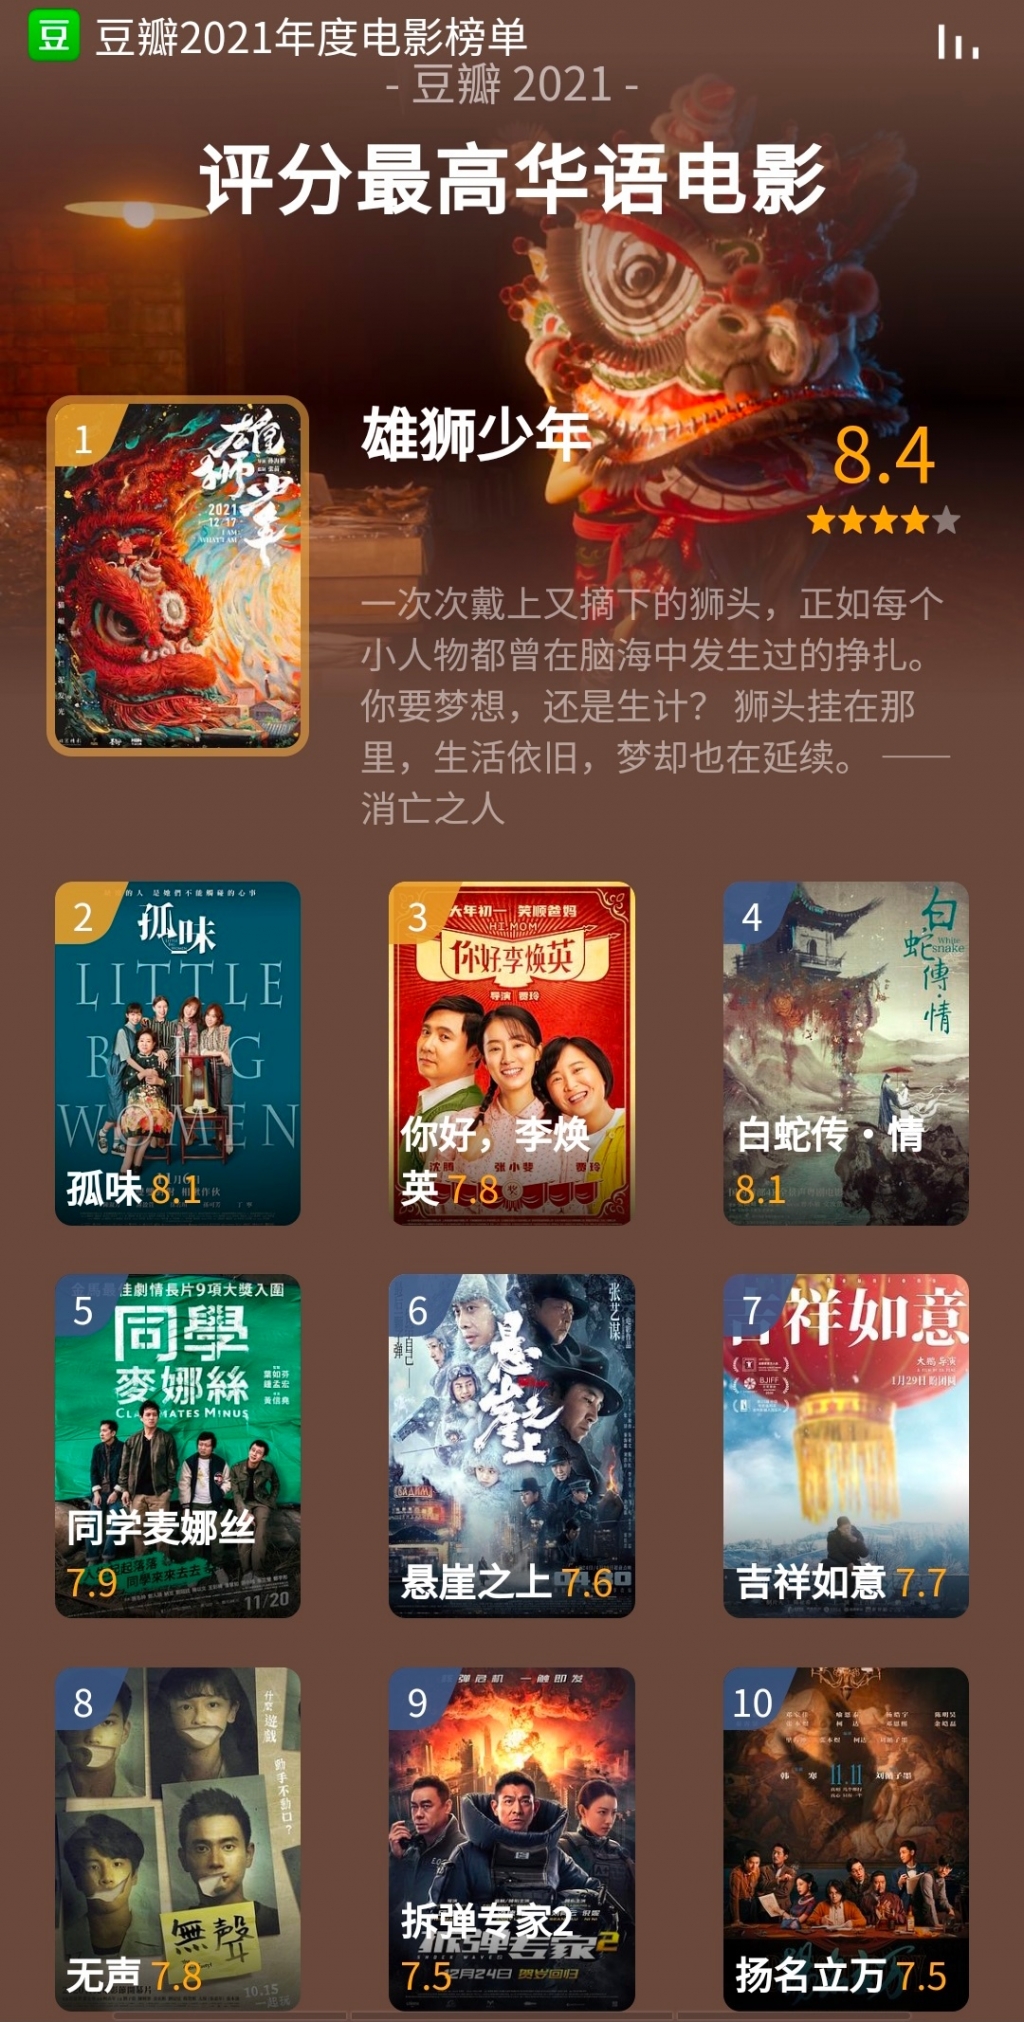 Top 7 bộ phim điện ảnh Hoa ngữ có điểm đánh giá cao nhất trên Douban mà bạn không thể bỏ lỡ trong năm nay